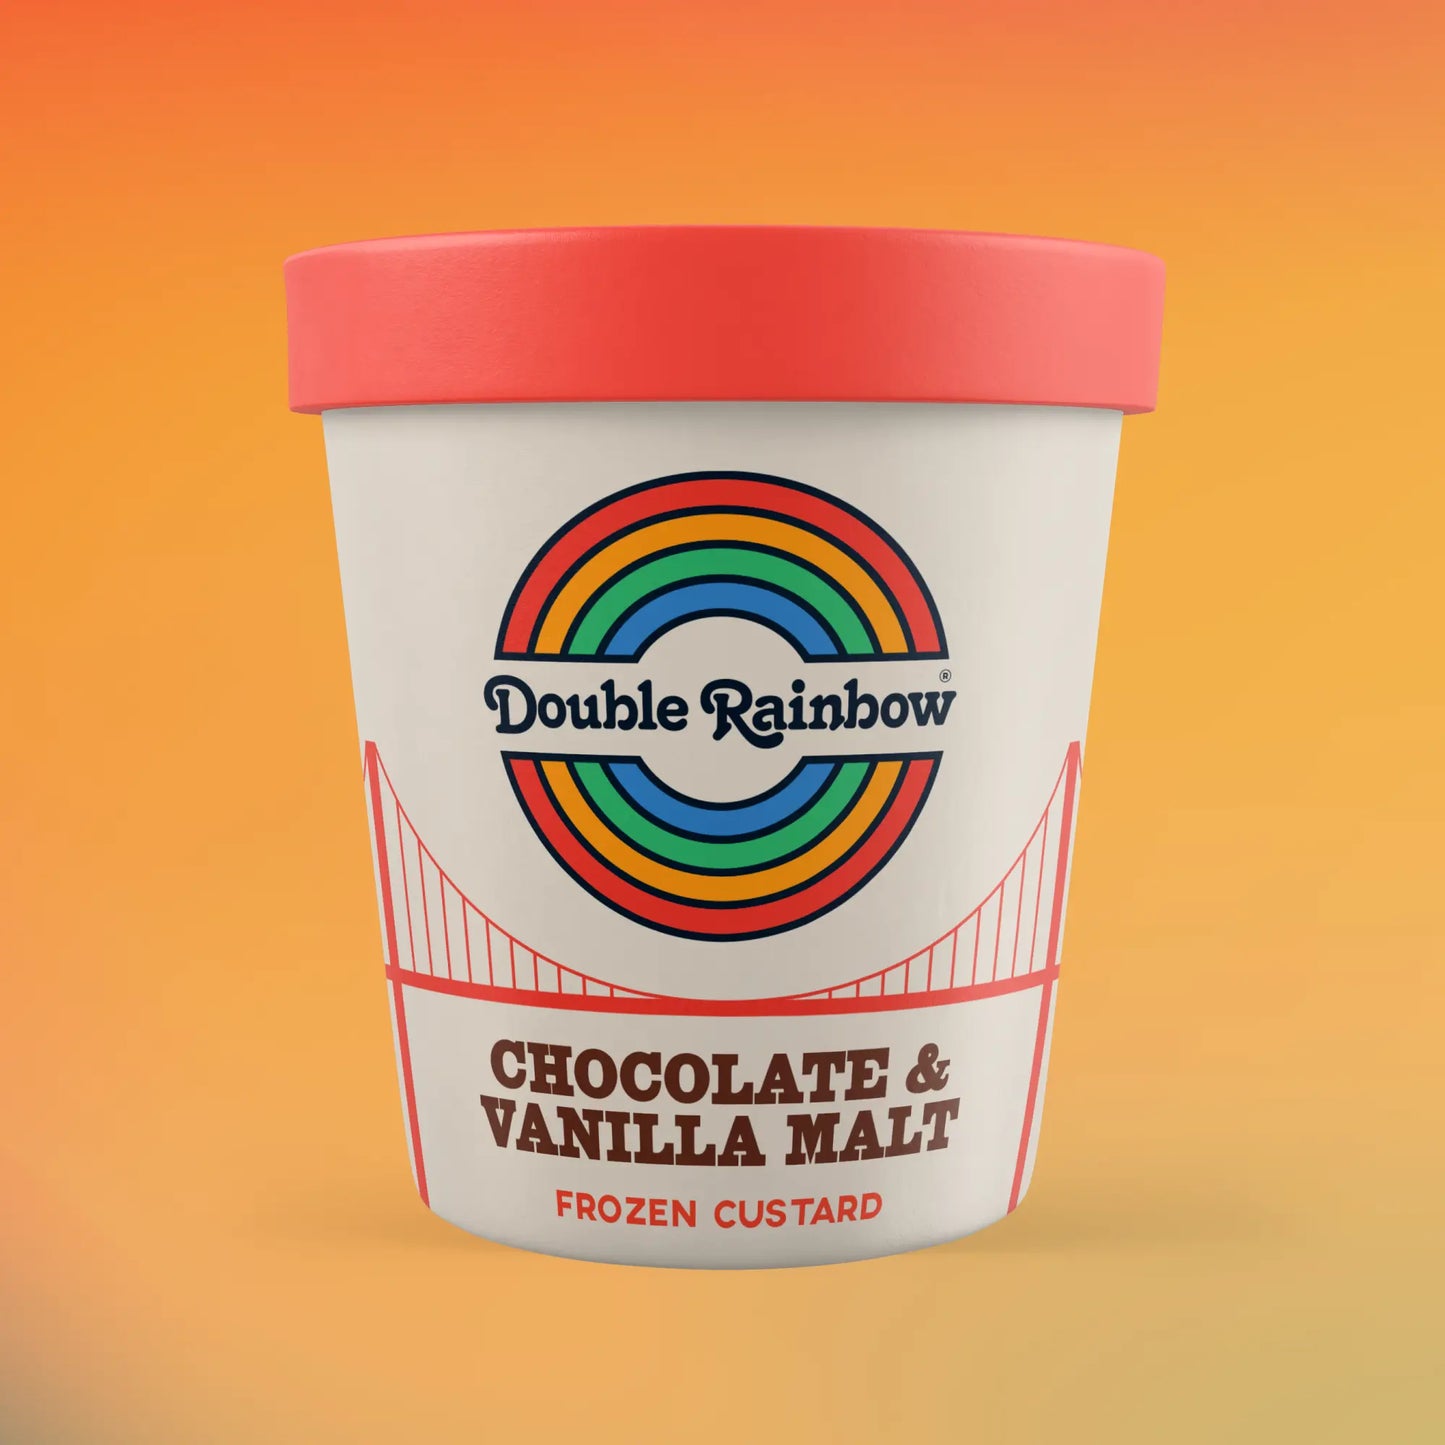 Double Rainbow Chocolate & Vanilla Malt